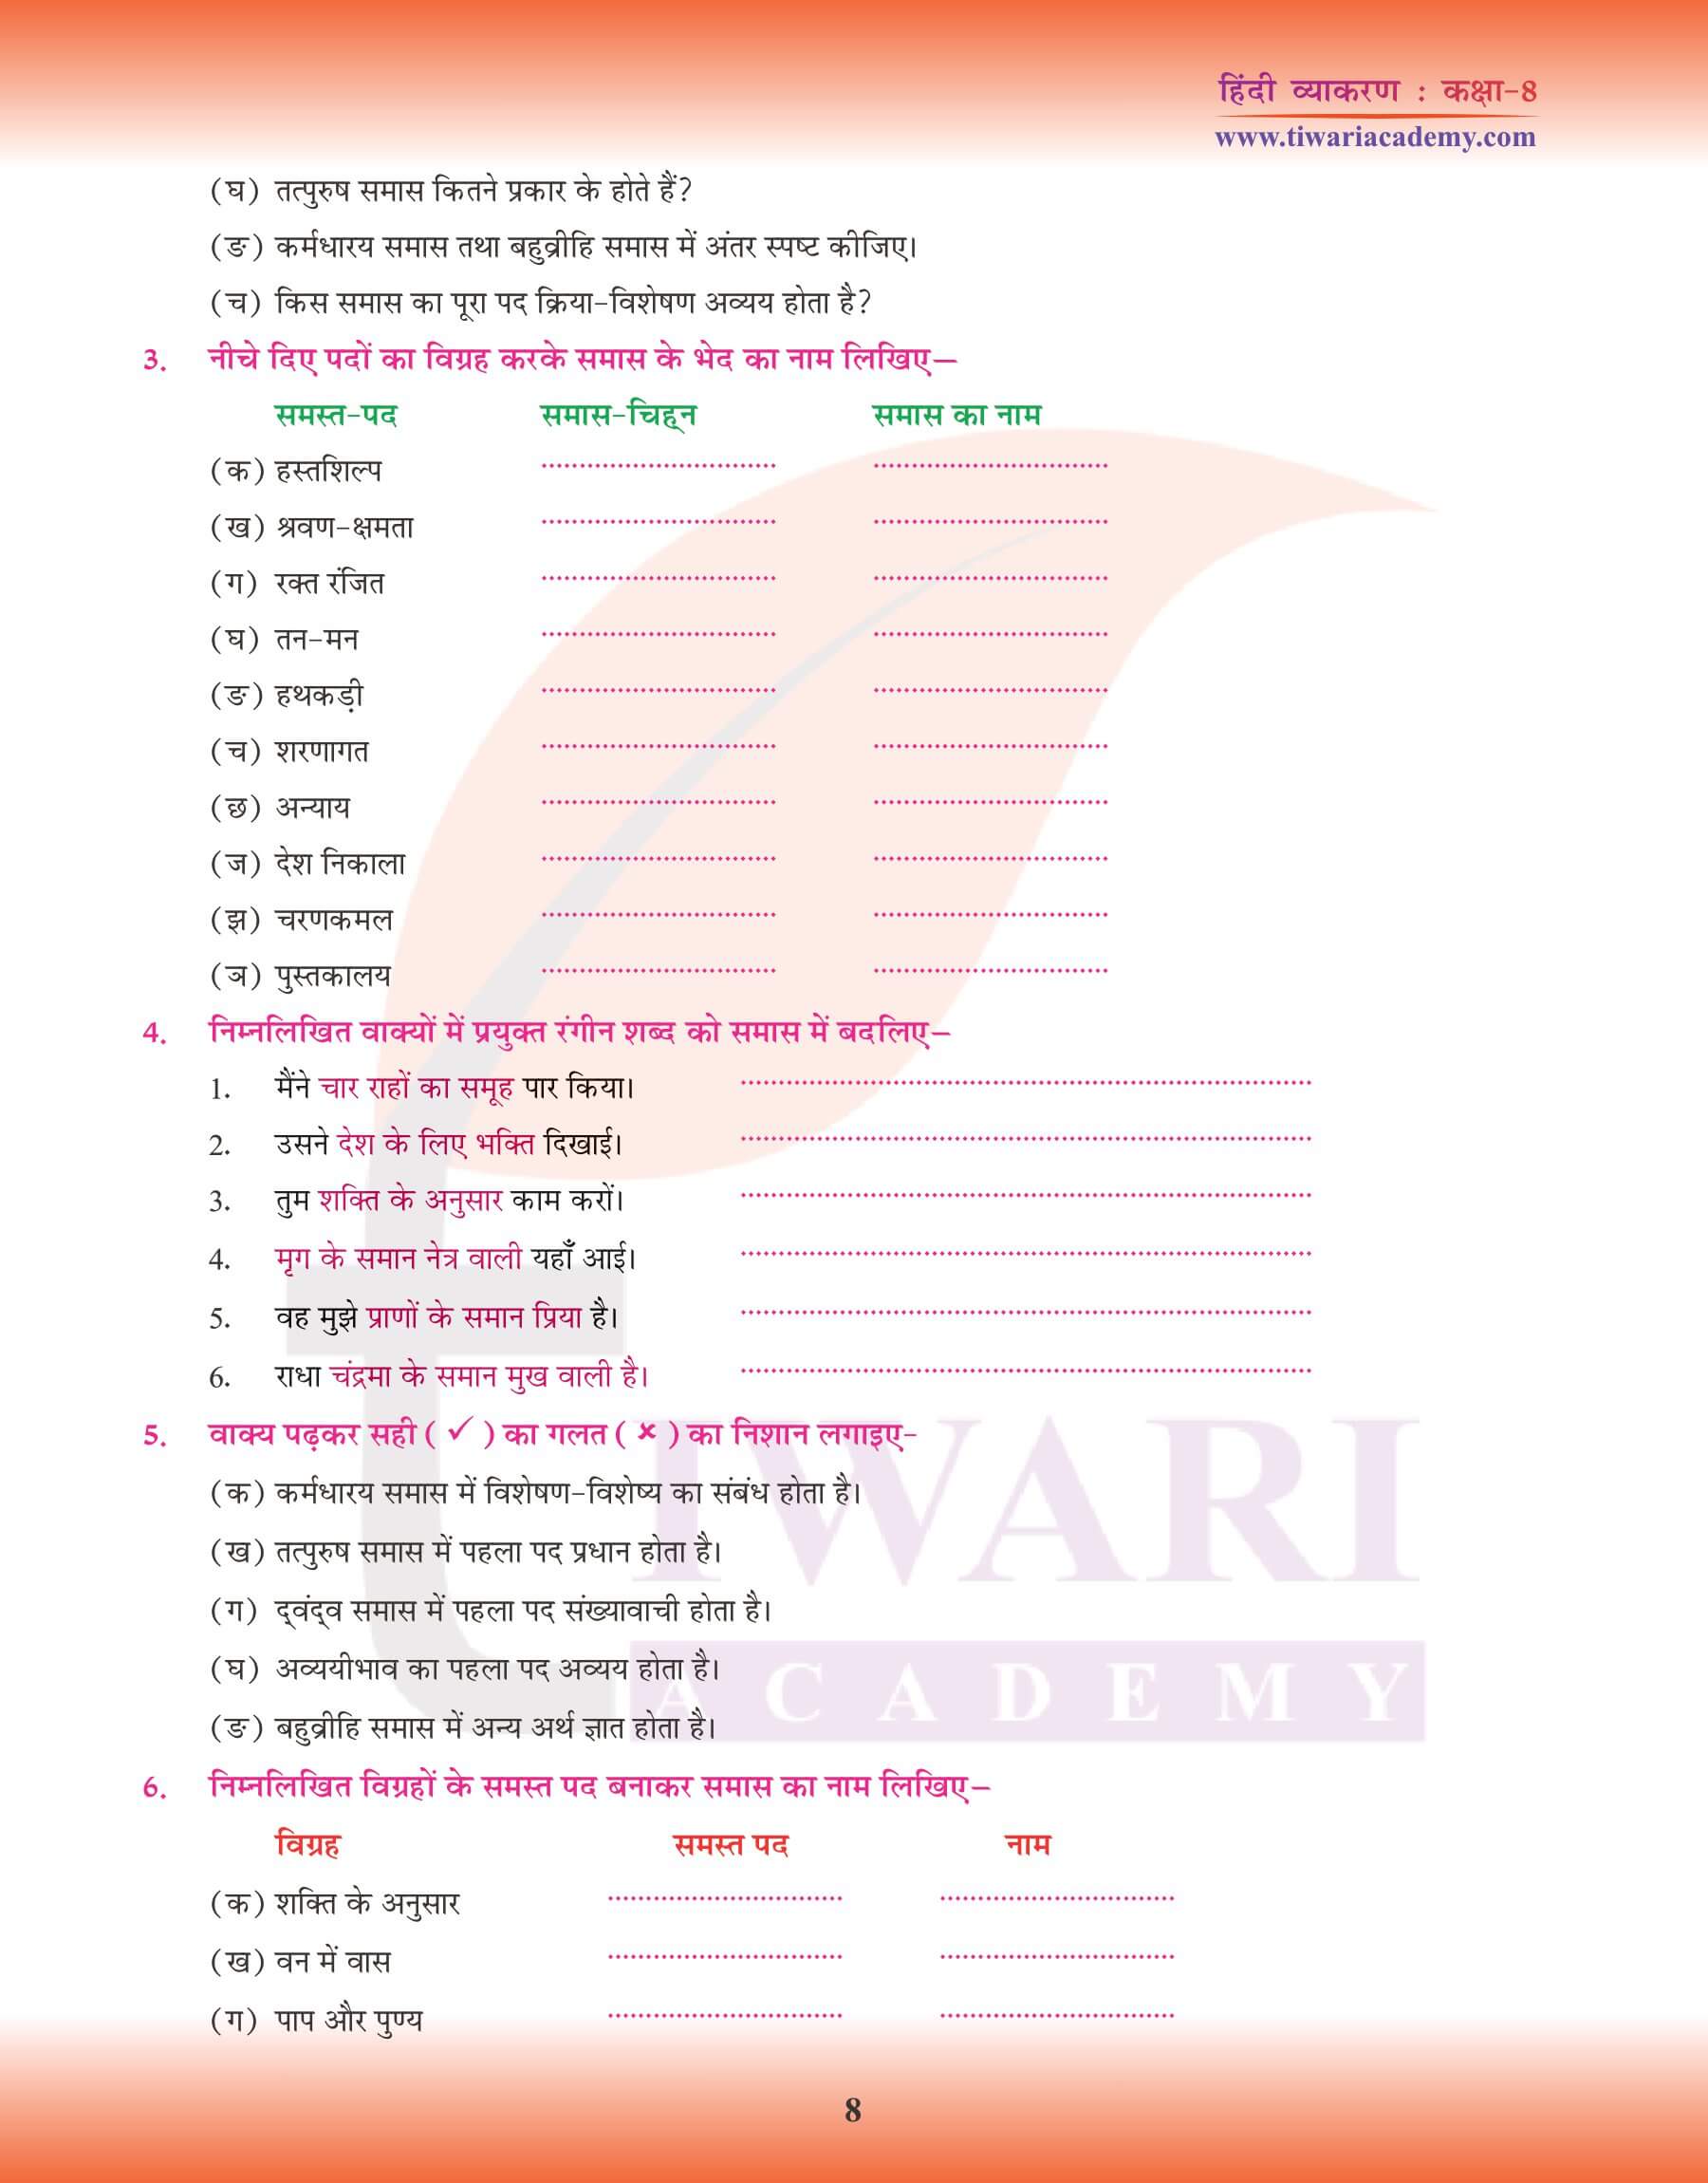 कक्षा 8 हिंदी व्याकरण समास नोट्स